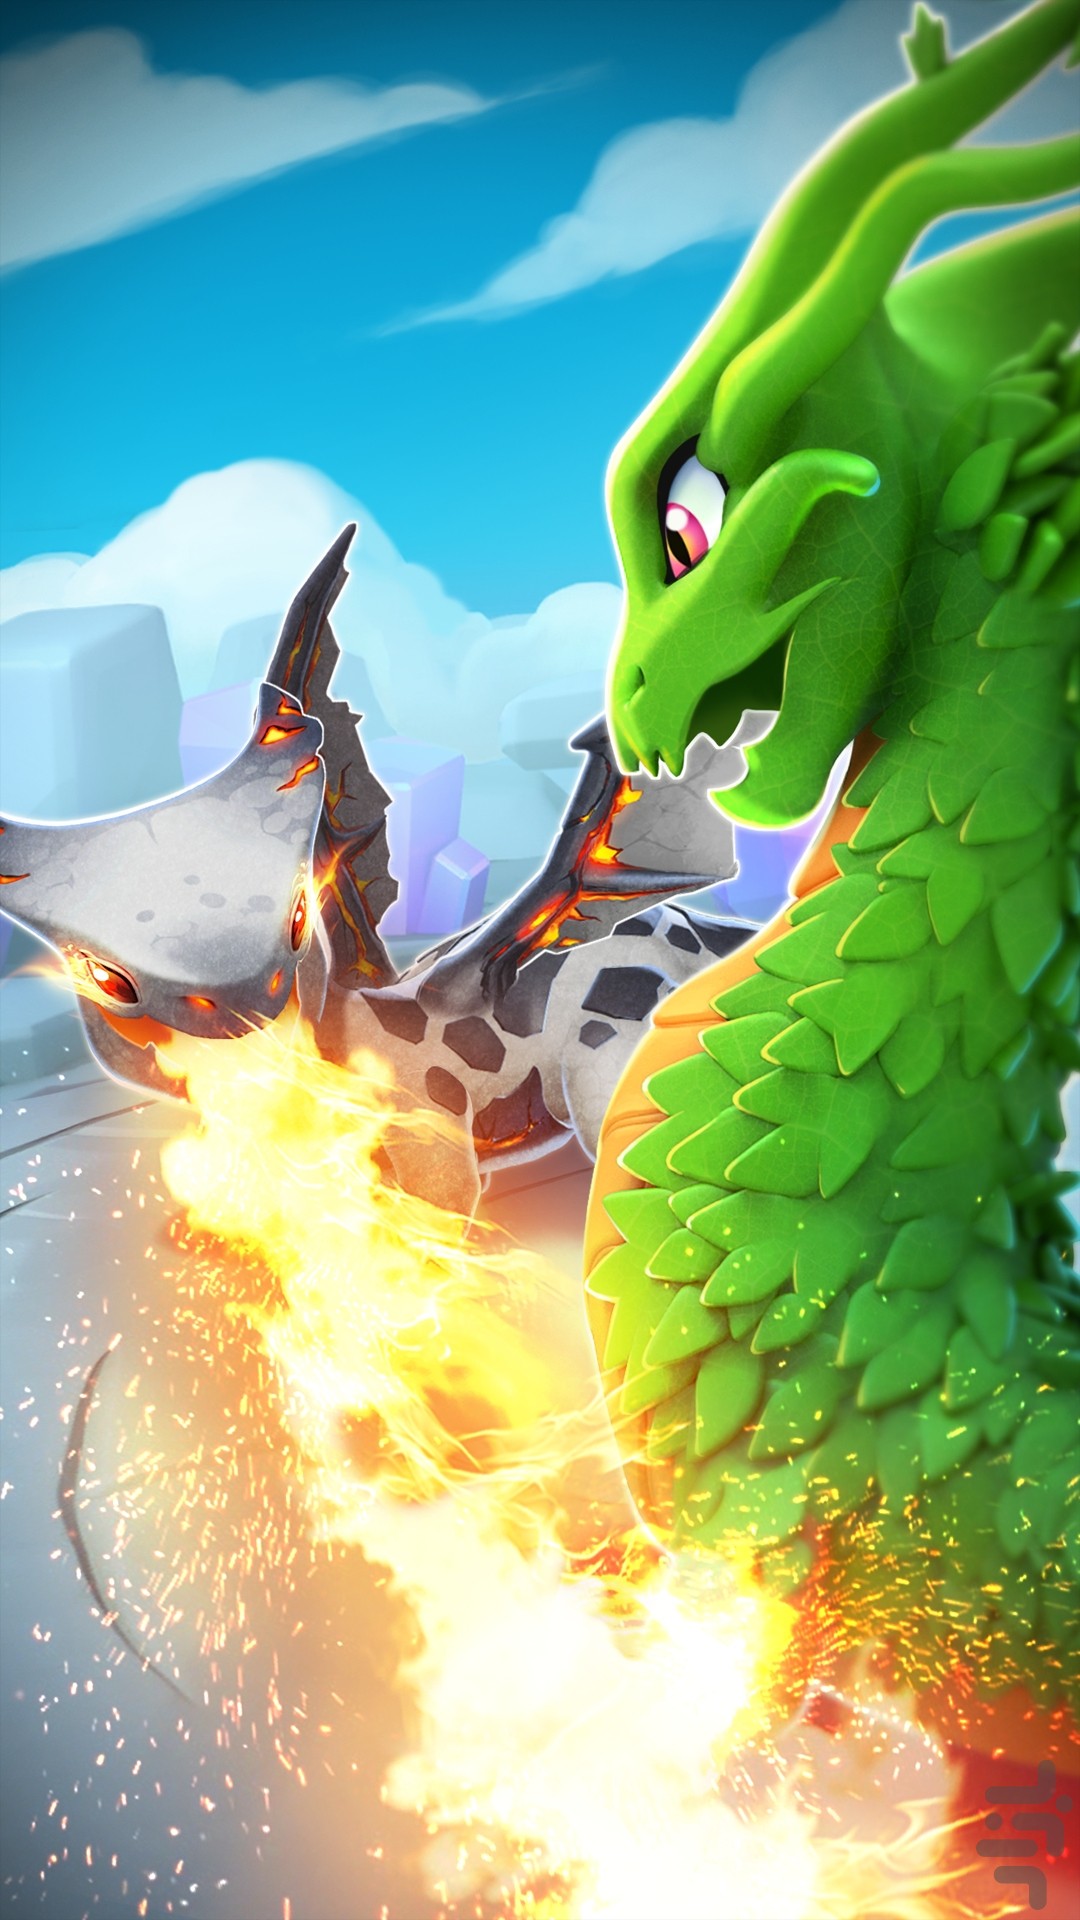 dragon mania legends update